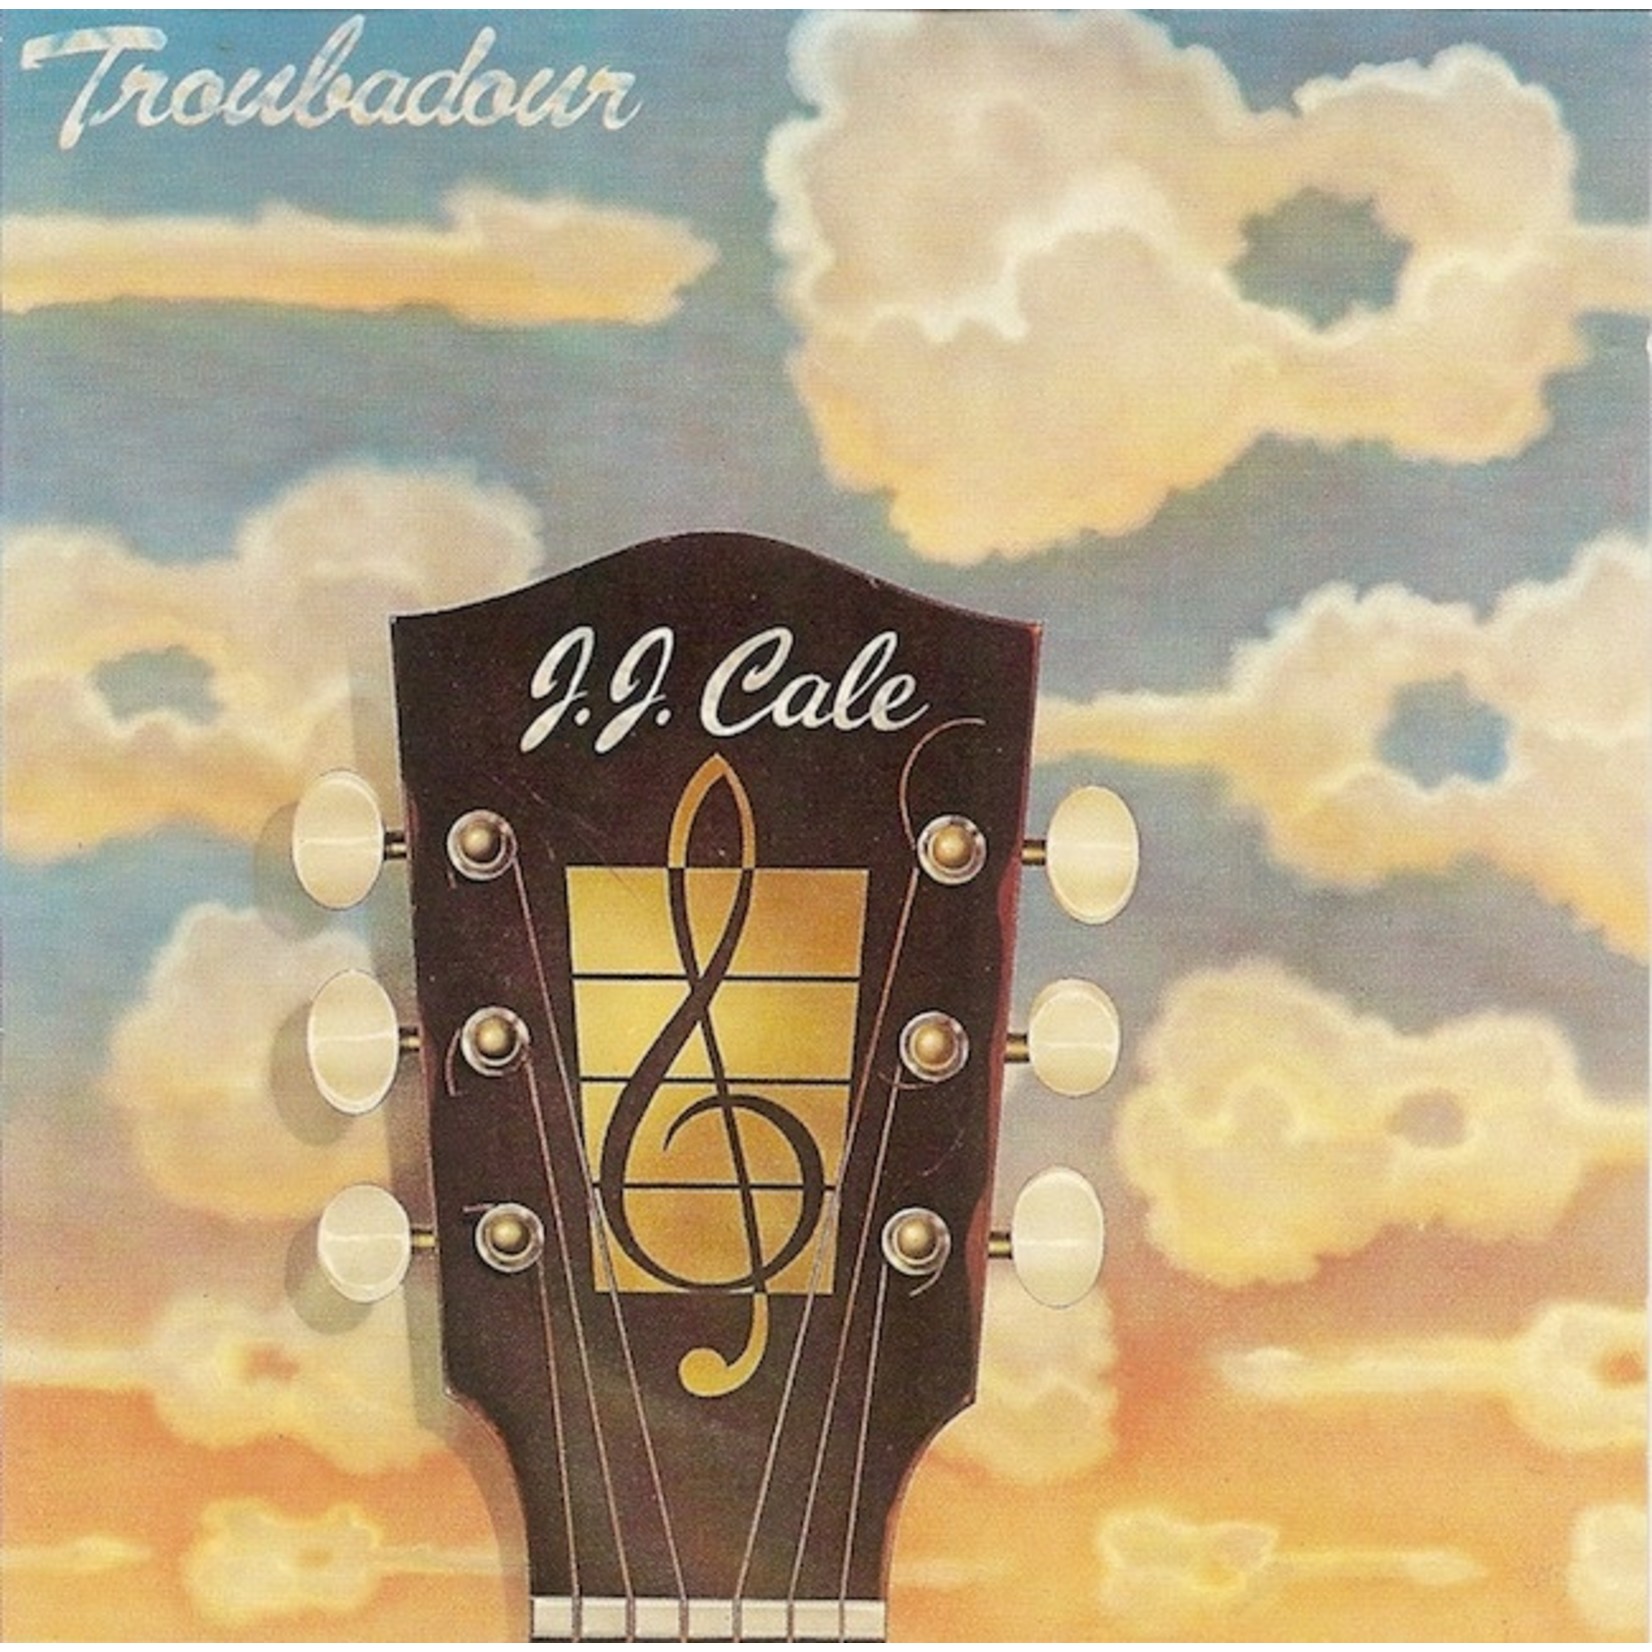 [Vintage] J.J. Cale - Troubadour